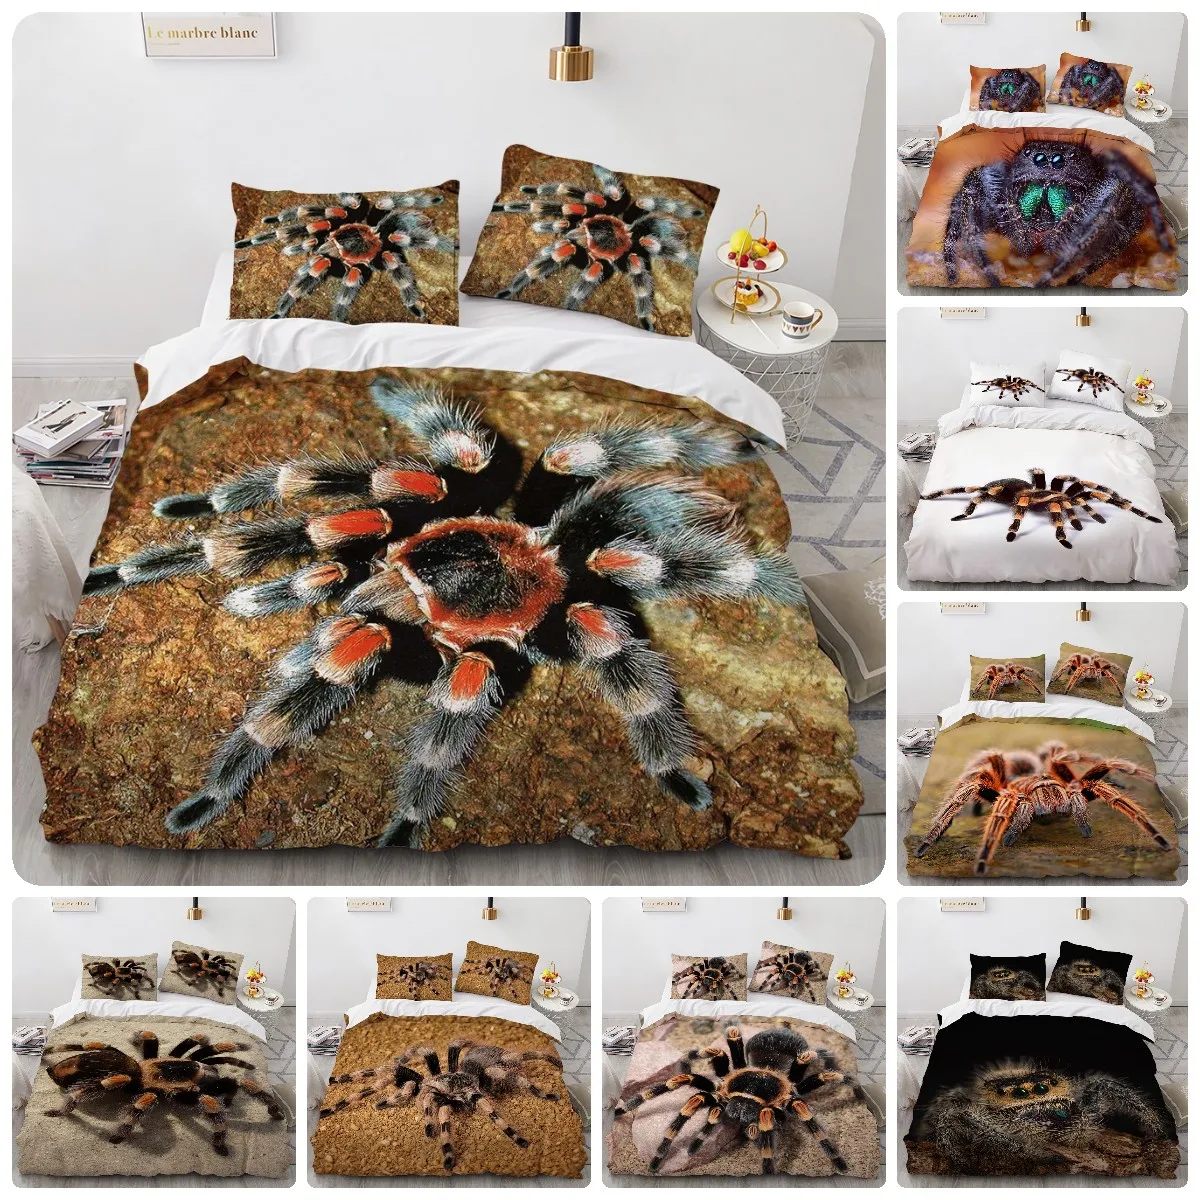 

Комплект постельного белья Morndream HD с цифровым 3D изображением паука, домашний текстиль, пододеяльник, наволочка, США/Великобритания/Австралия, одинарный, двойной, полный, Королевский, королевский комплект для спальни